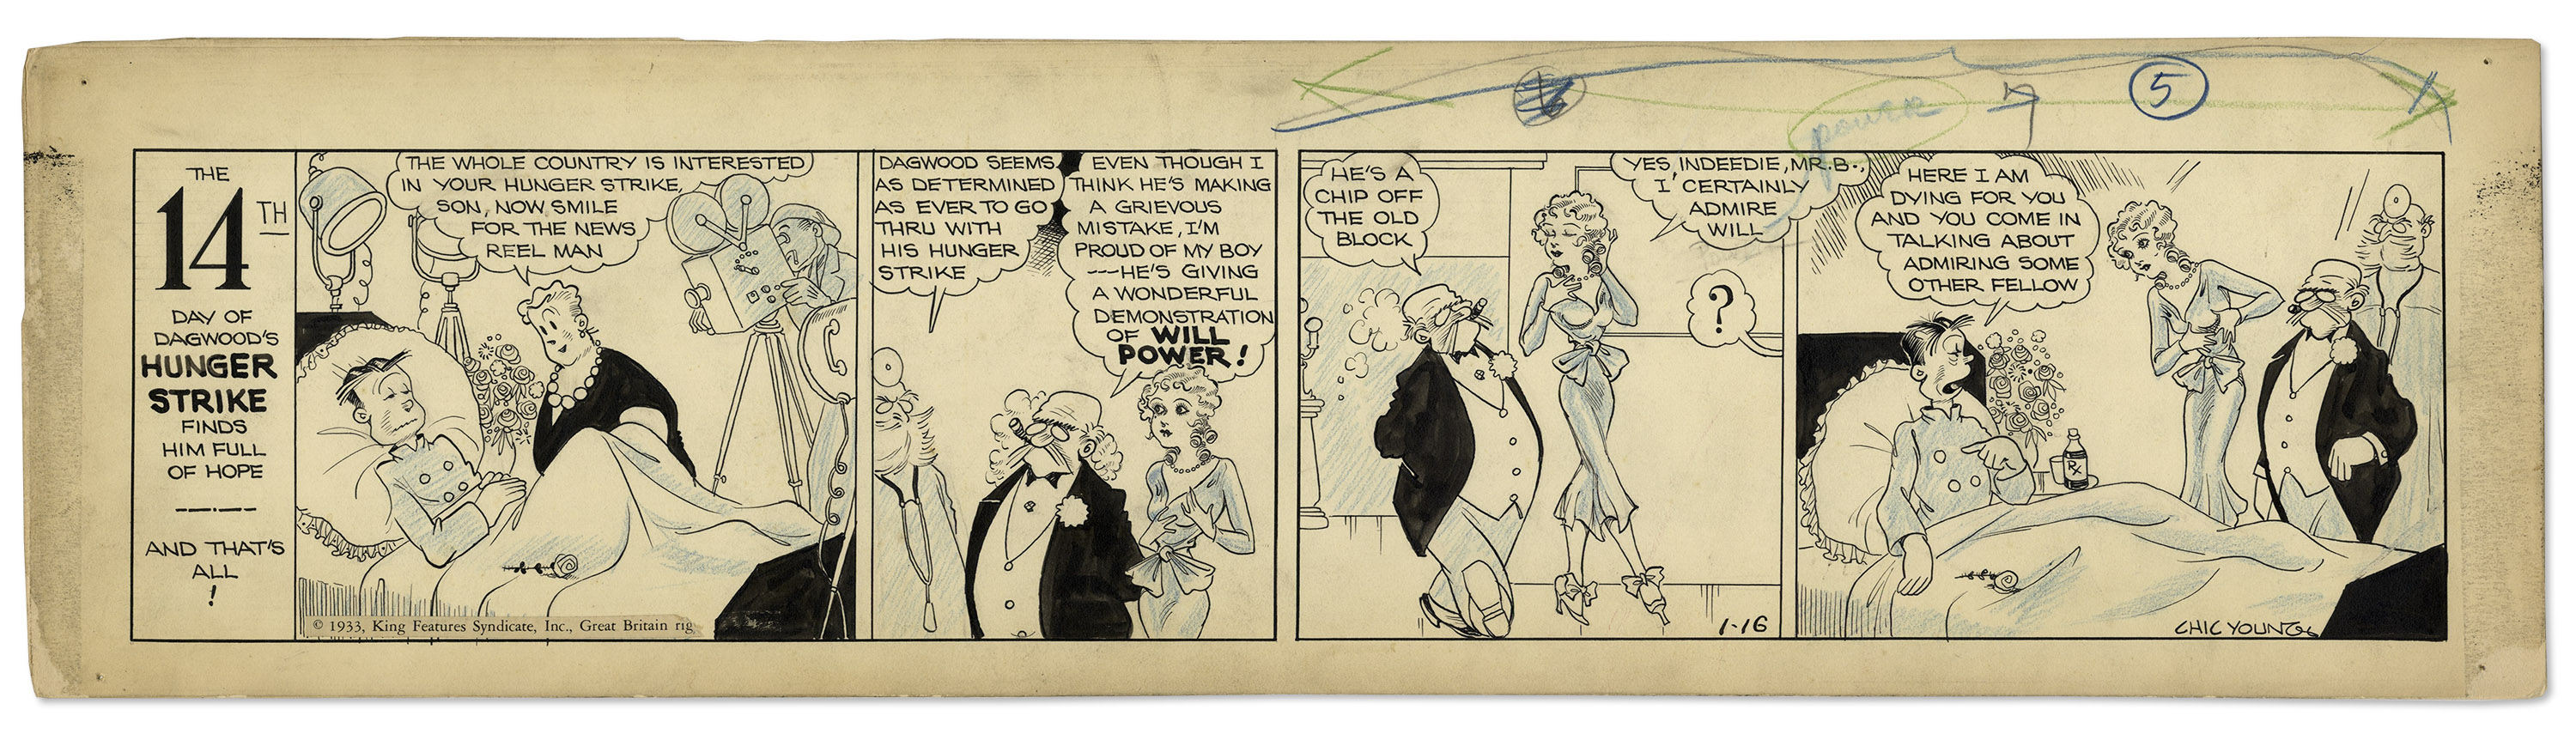 Blondie 1933 Comic Strip